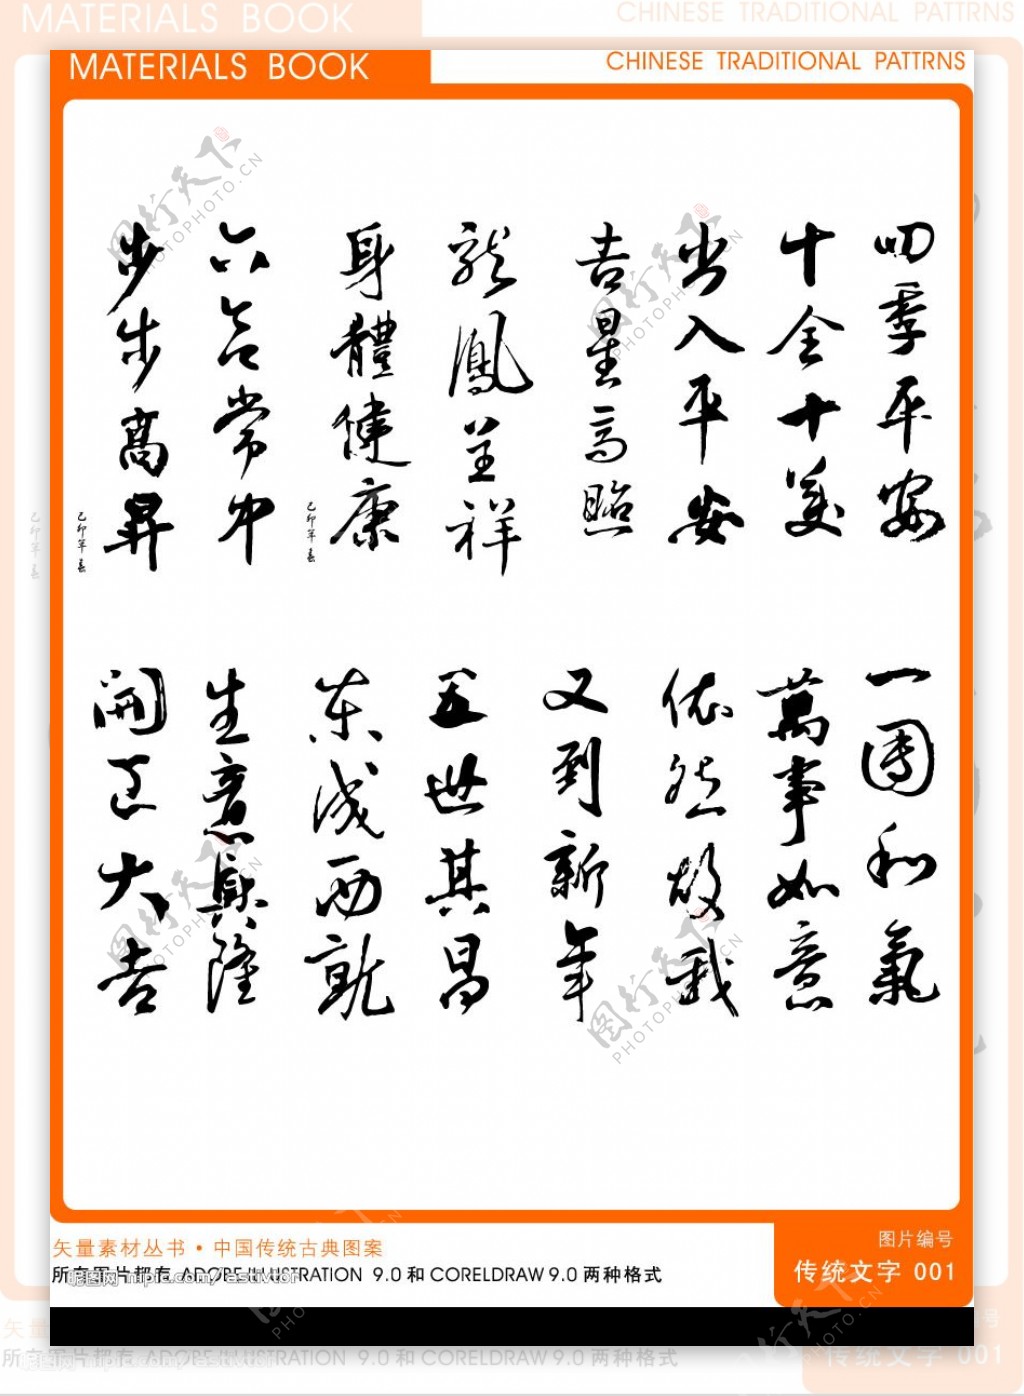 中国传统矢量文字素材图片